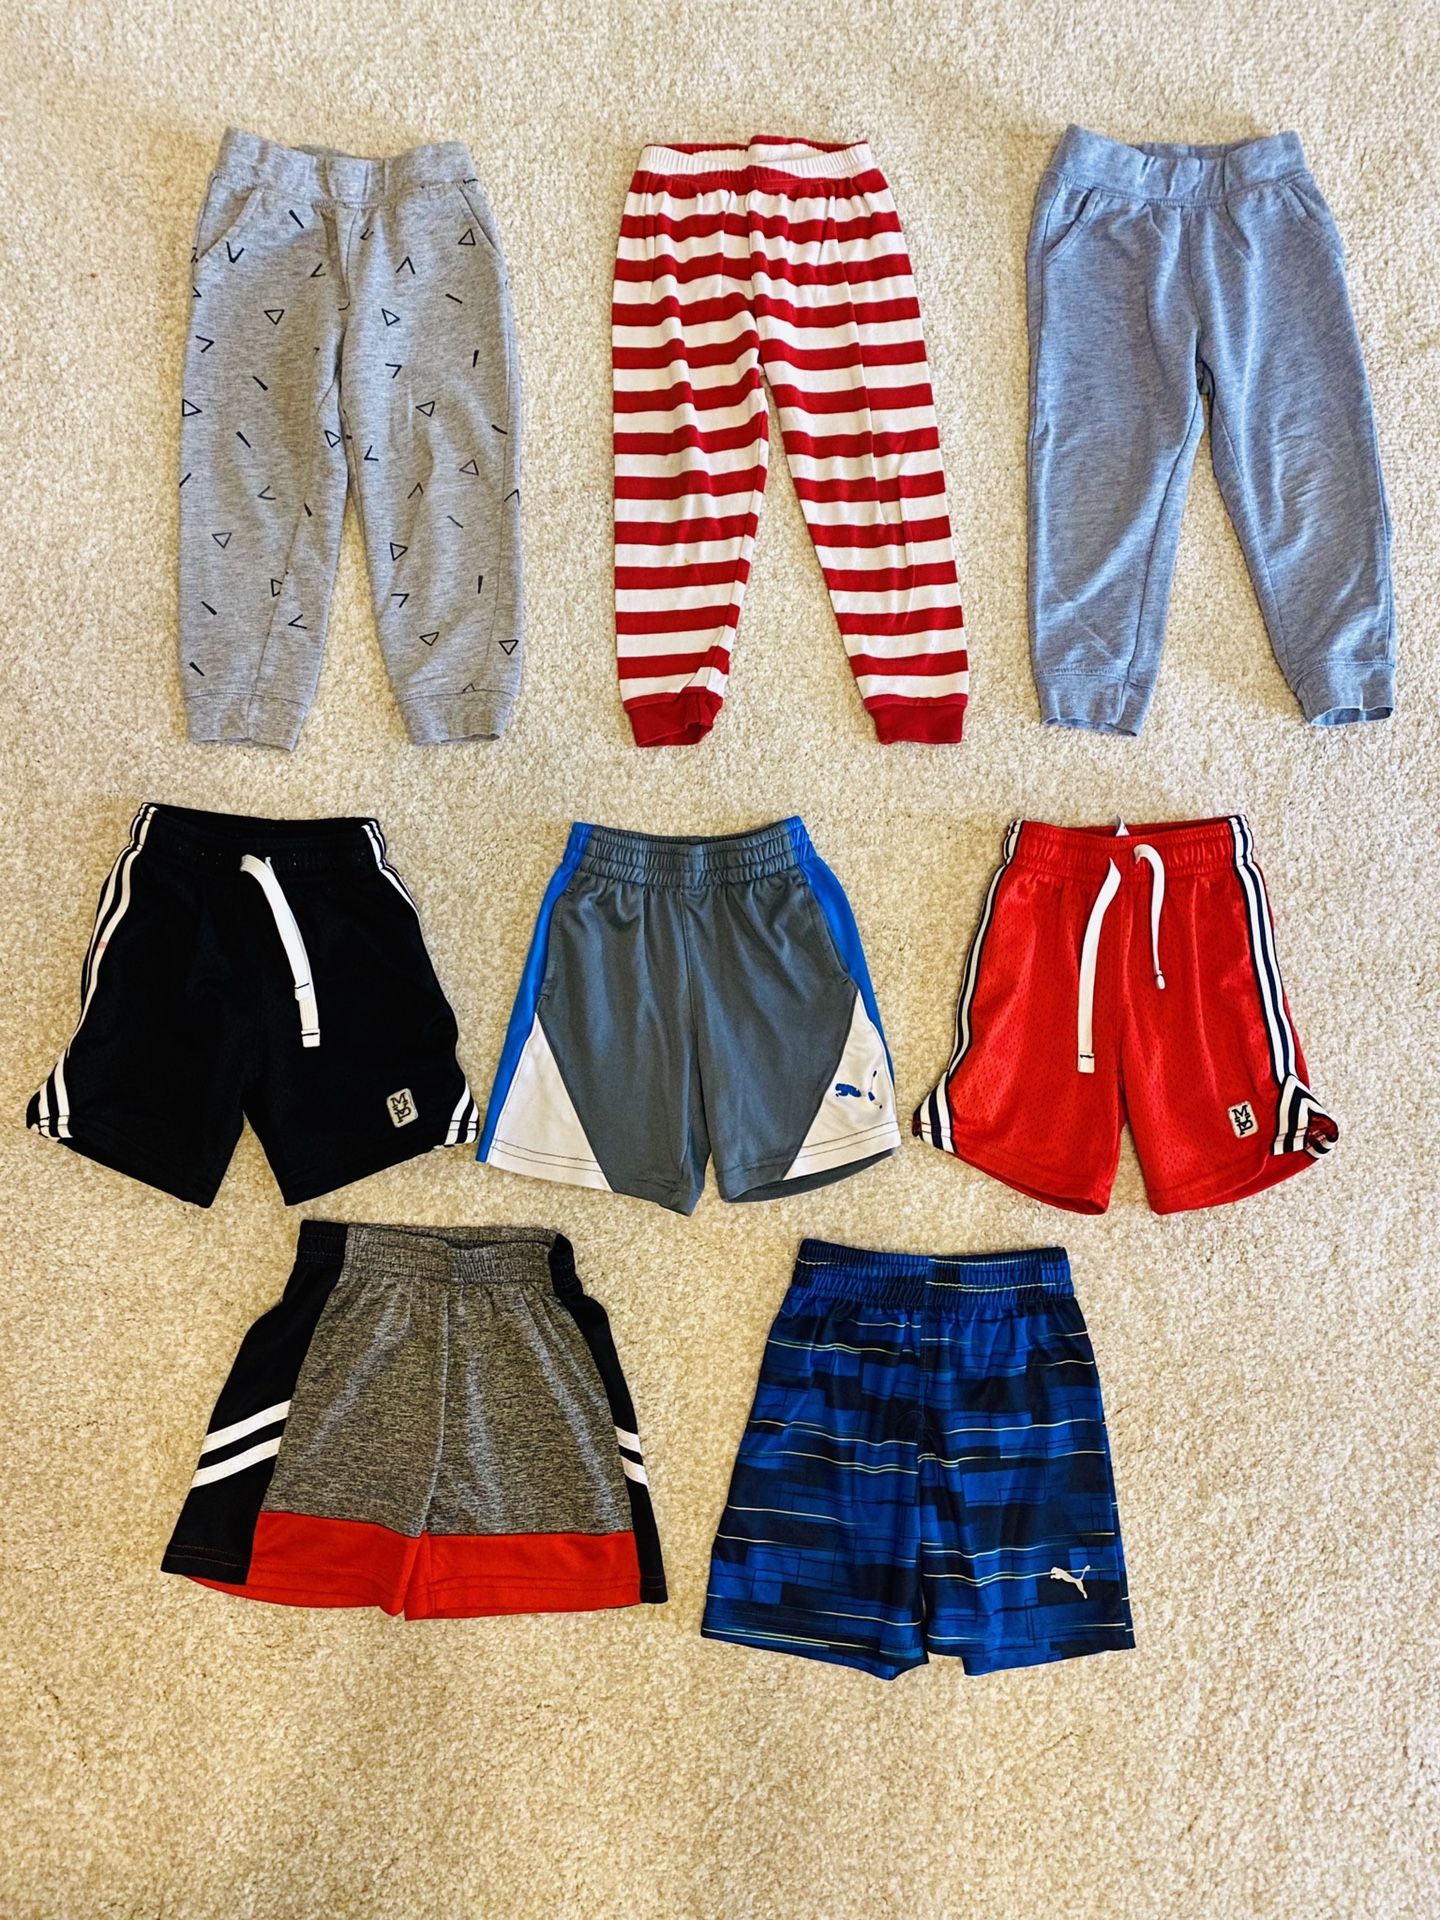 Kids clothes 2T (3 pants, 5 shorts)